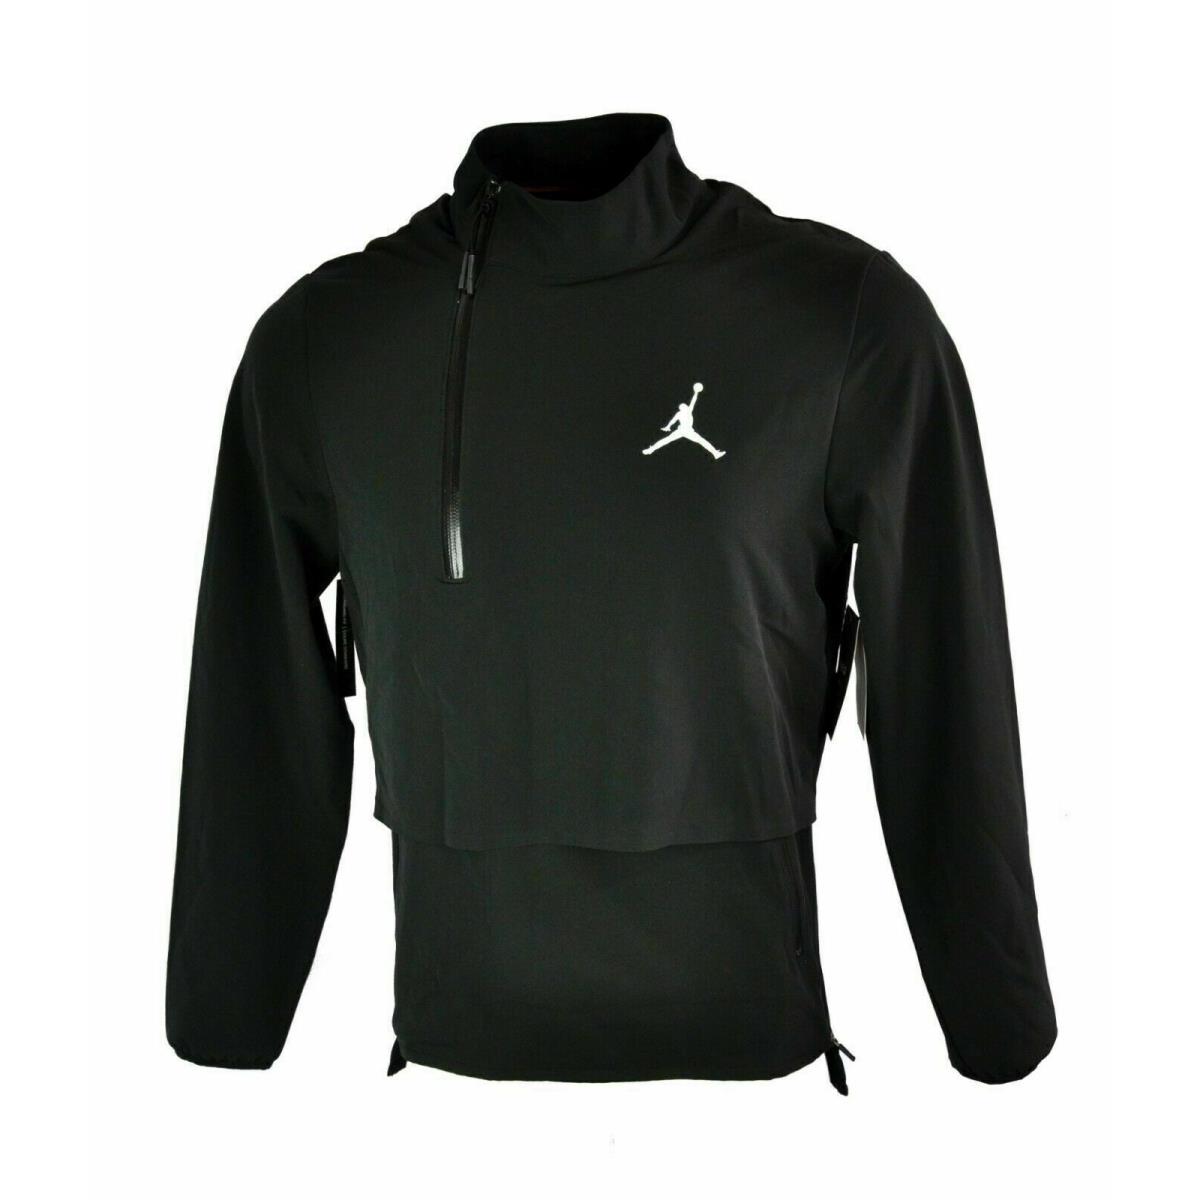 Nike Jordan Shield 23 Tech Training Jacket 926453-010 Black Mens Size L